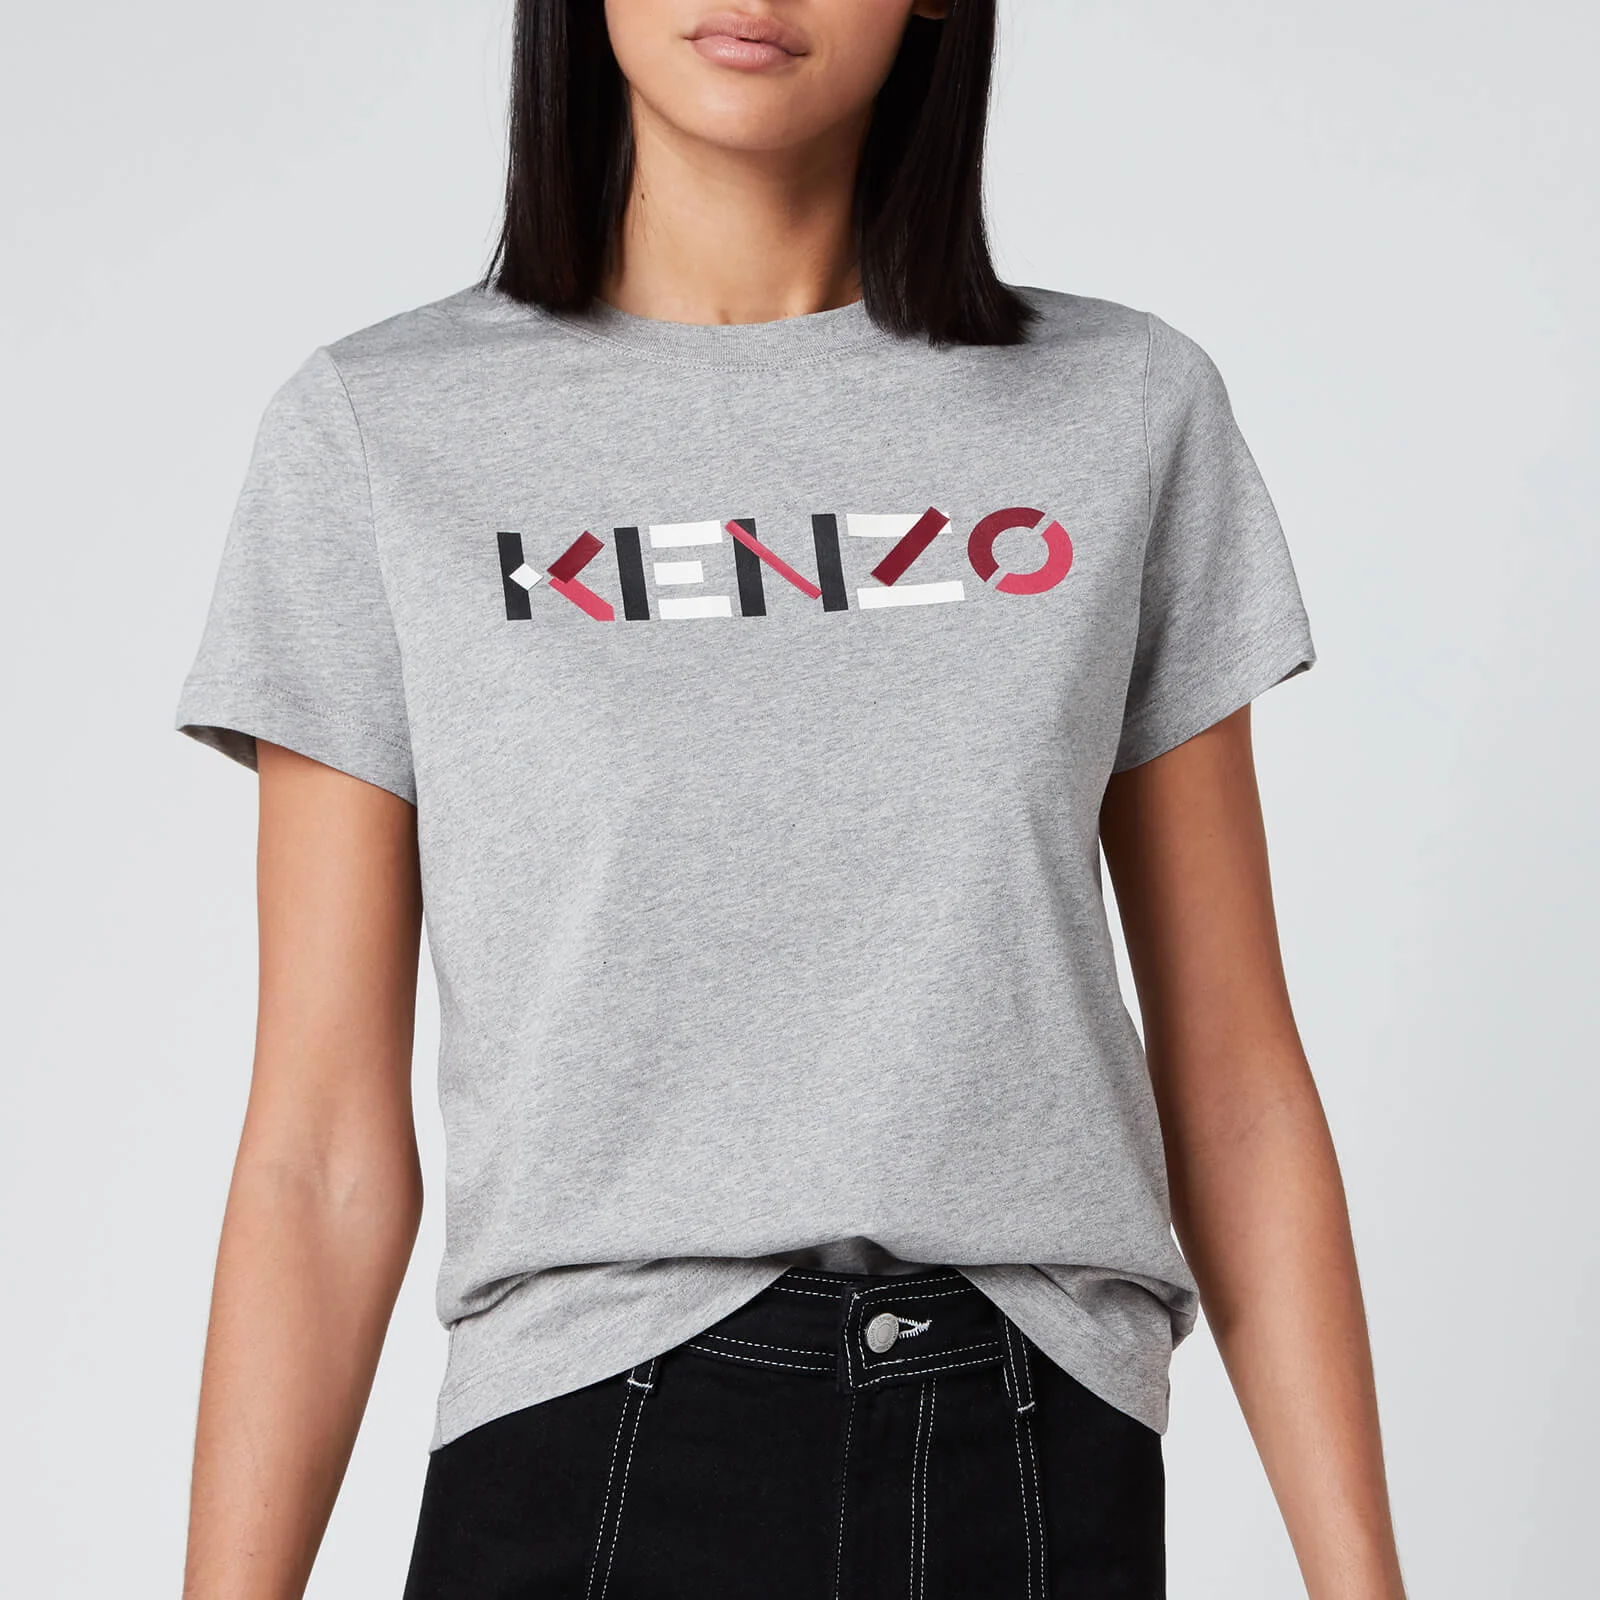 KENZO Women's Classic Fit T-Shirt KENZO Logo - Pearl Grey Image 1